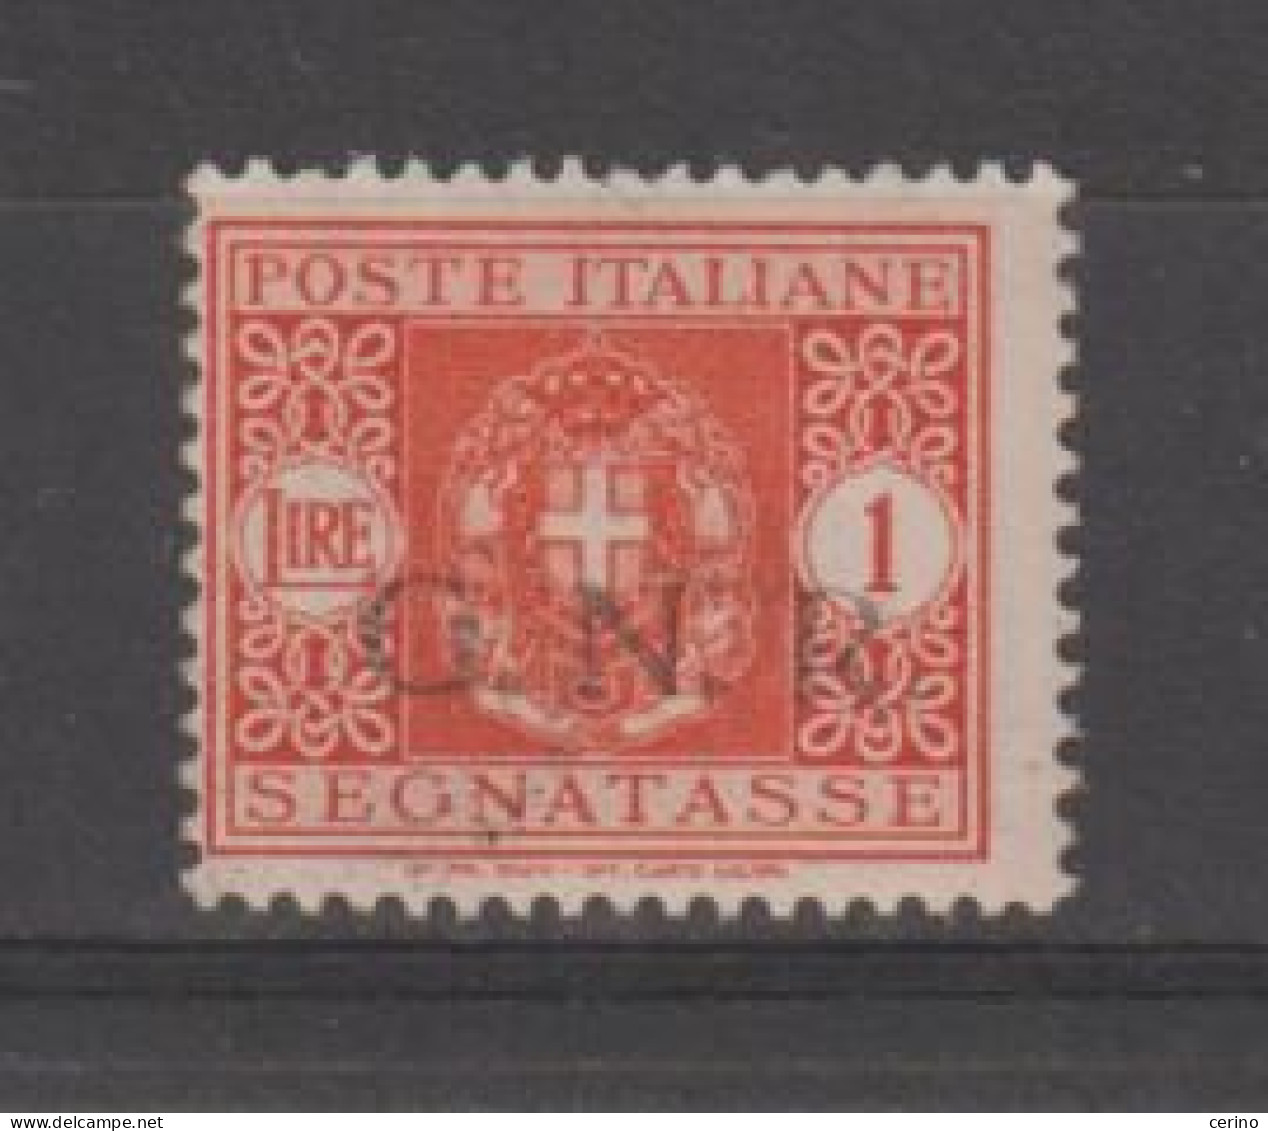 R.S.I.:  1944  TASSE  G.N.R. -  £. 1  ARANCIO  N. -  SASS. 55 - Segnatasse